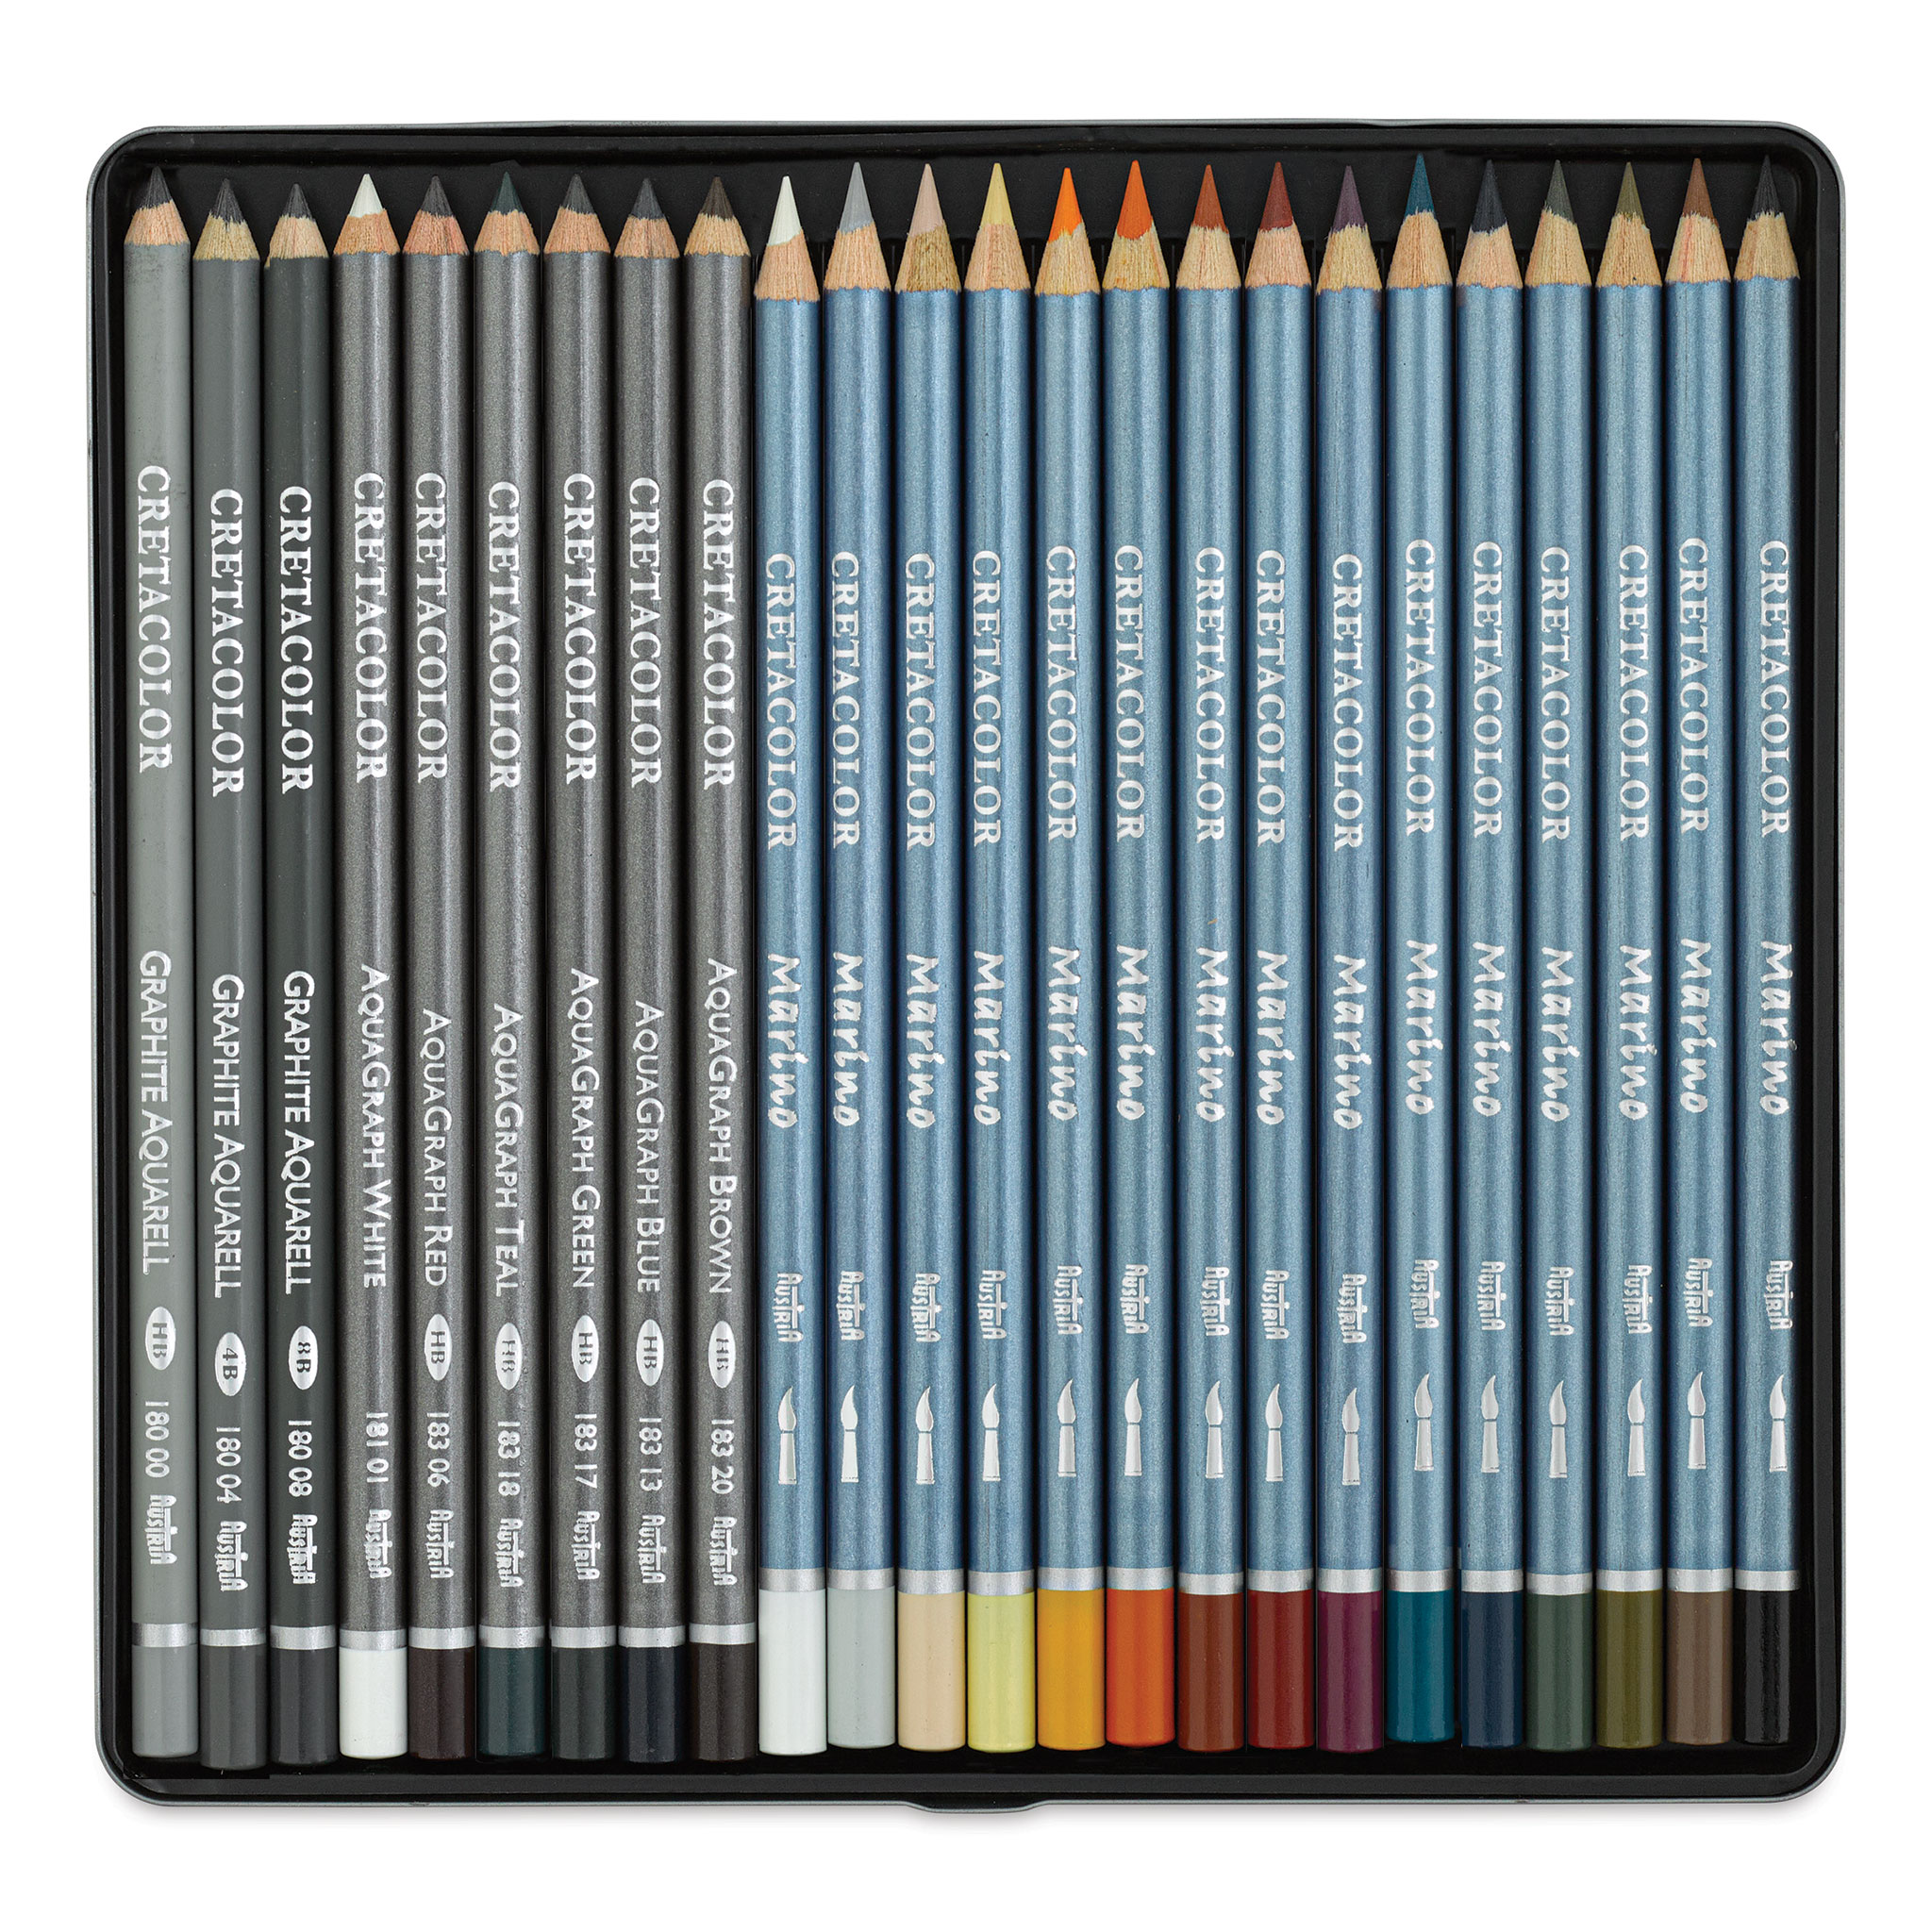 Cretacolor Nero Deep Black Pencils and Set